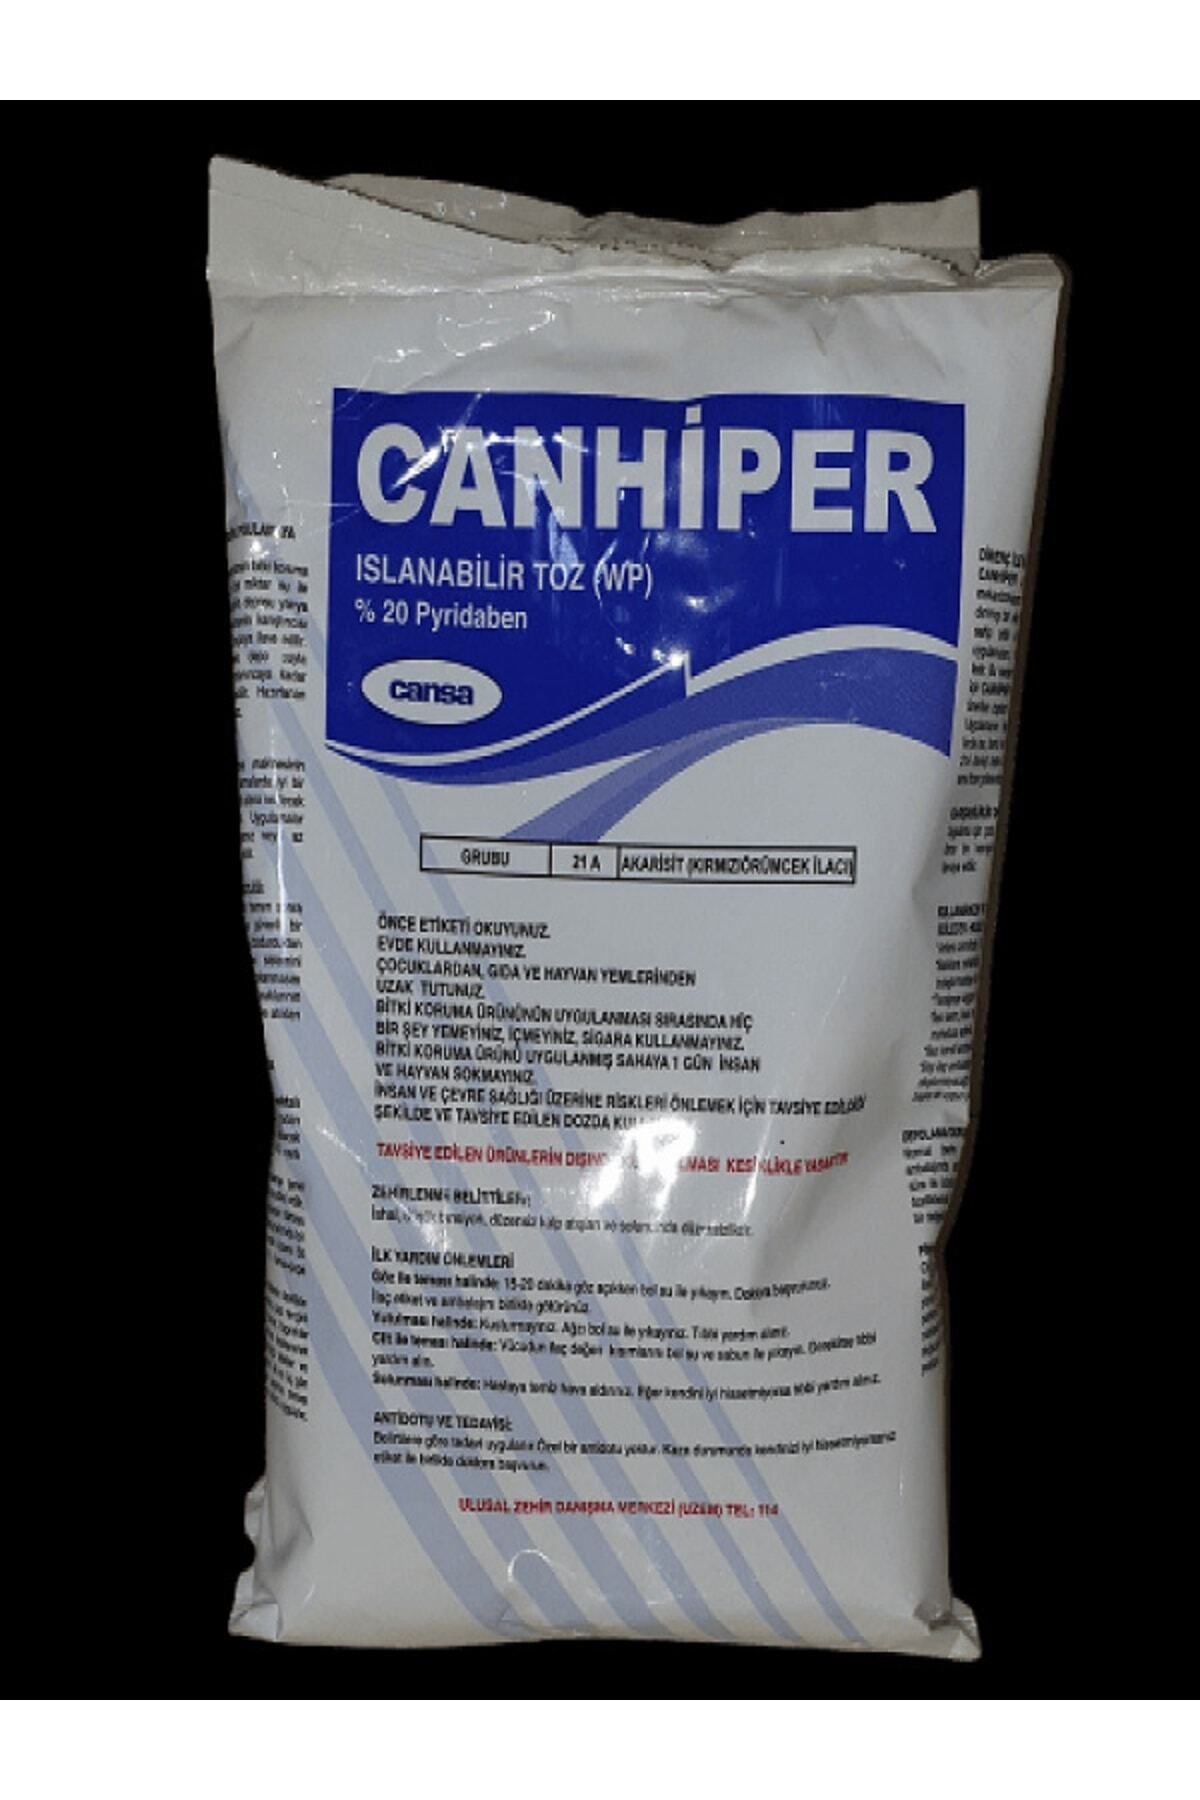 CANARY Canhiper 500 gr Yeni Üretim Bit Pire Kene Kırmızı Örümcek Kedi Köpek Biti Ve Haşere Ilacı